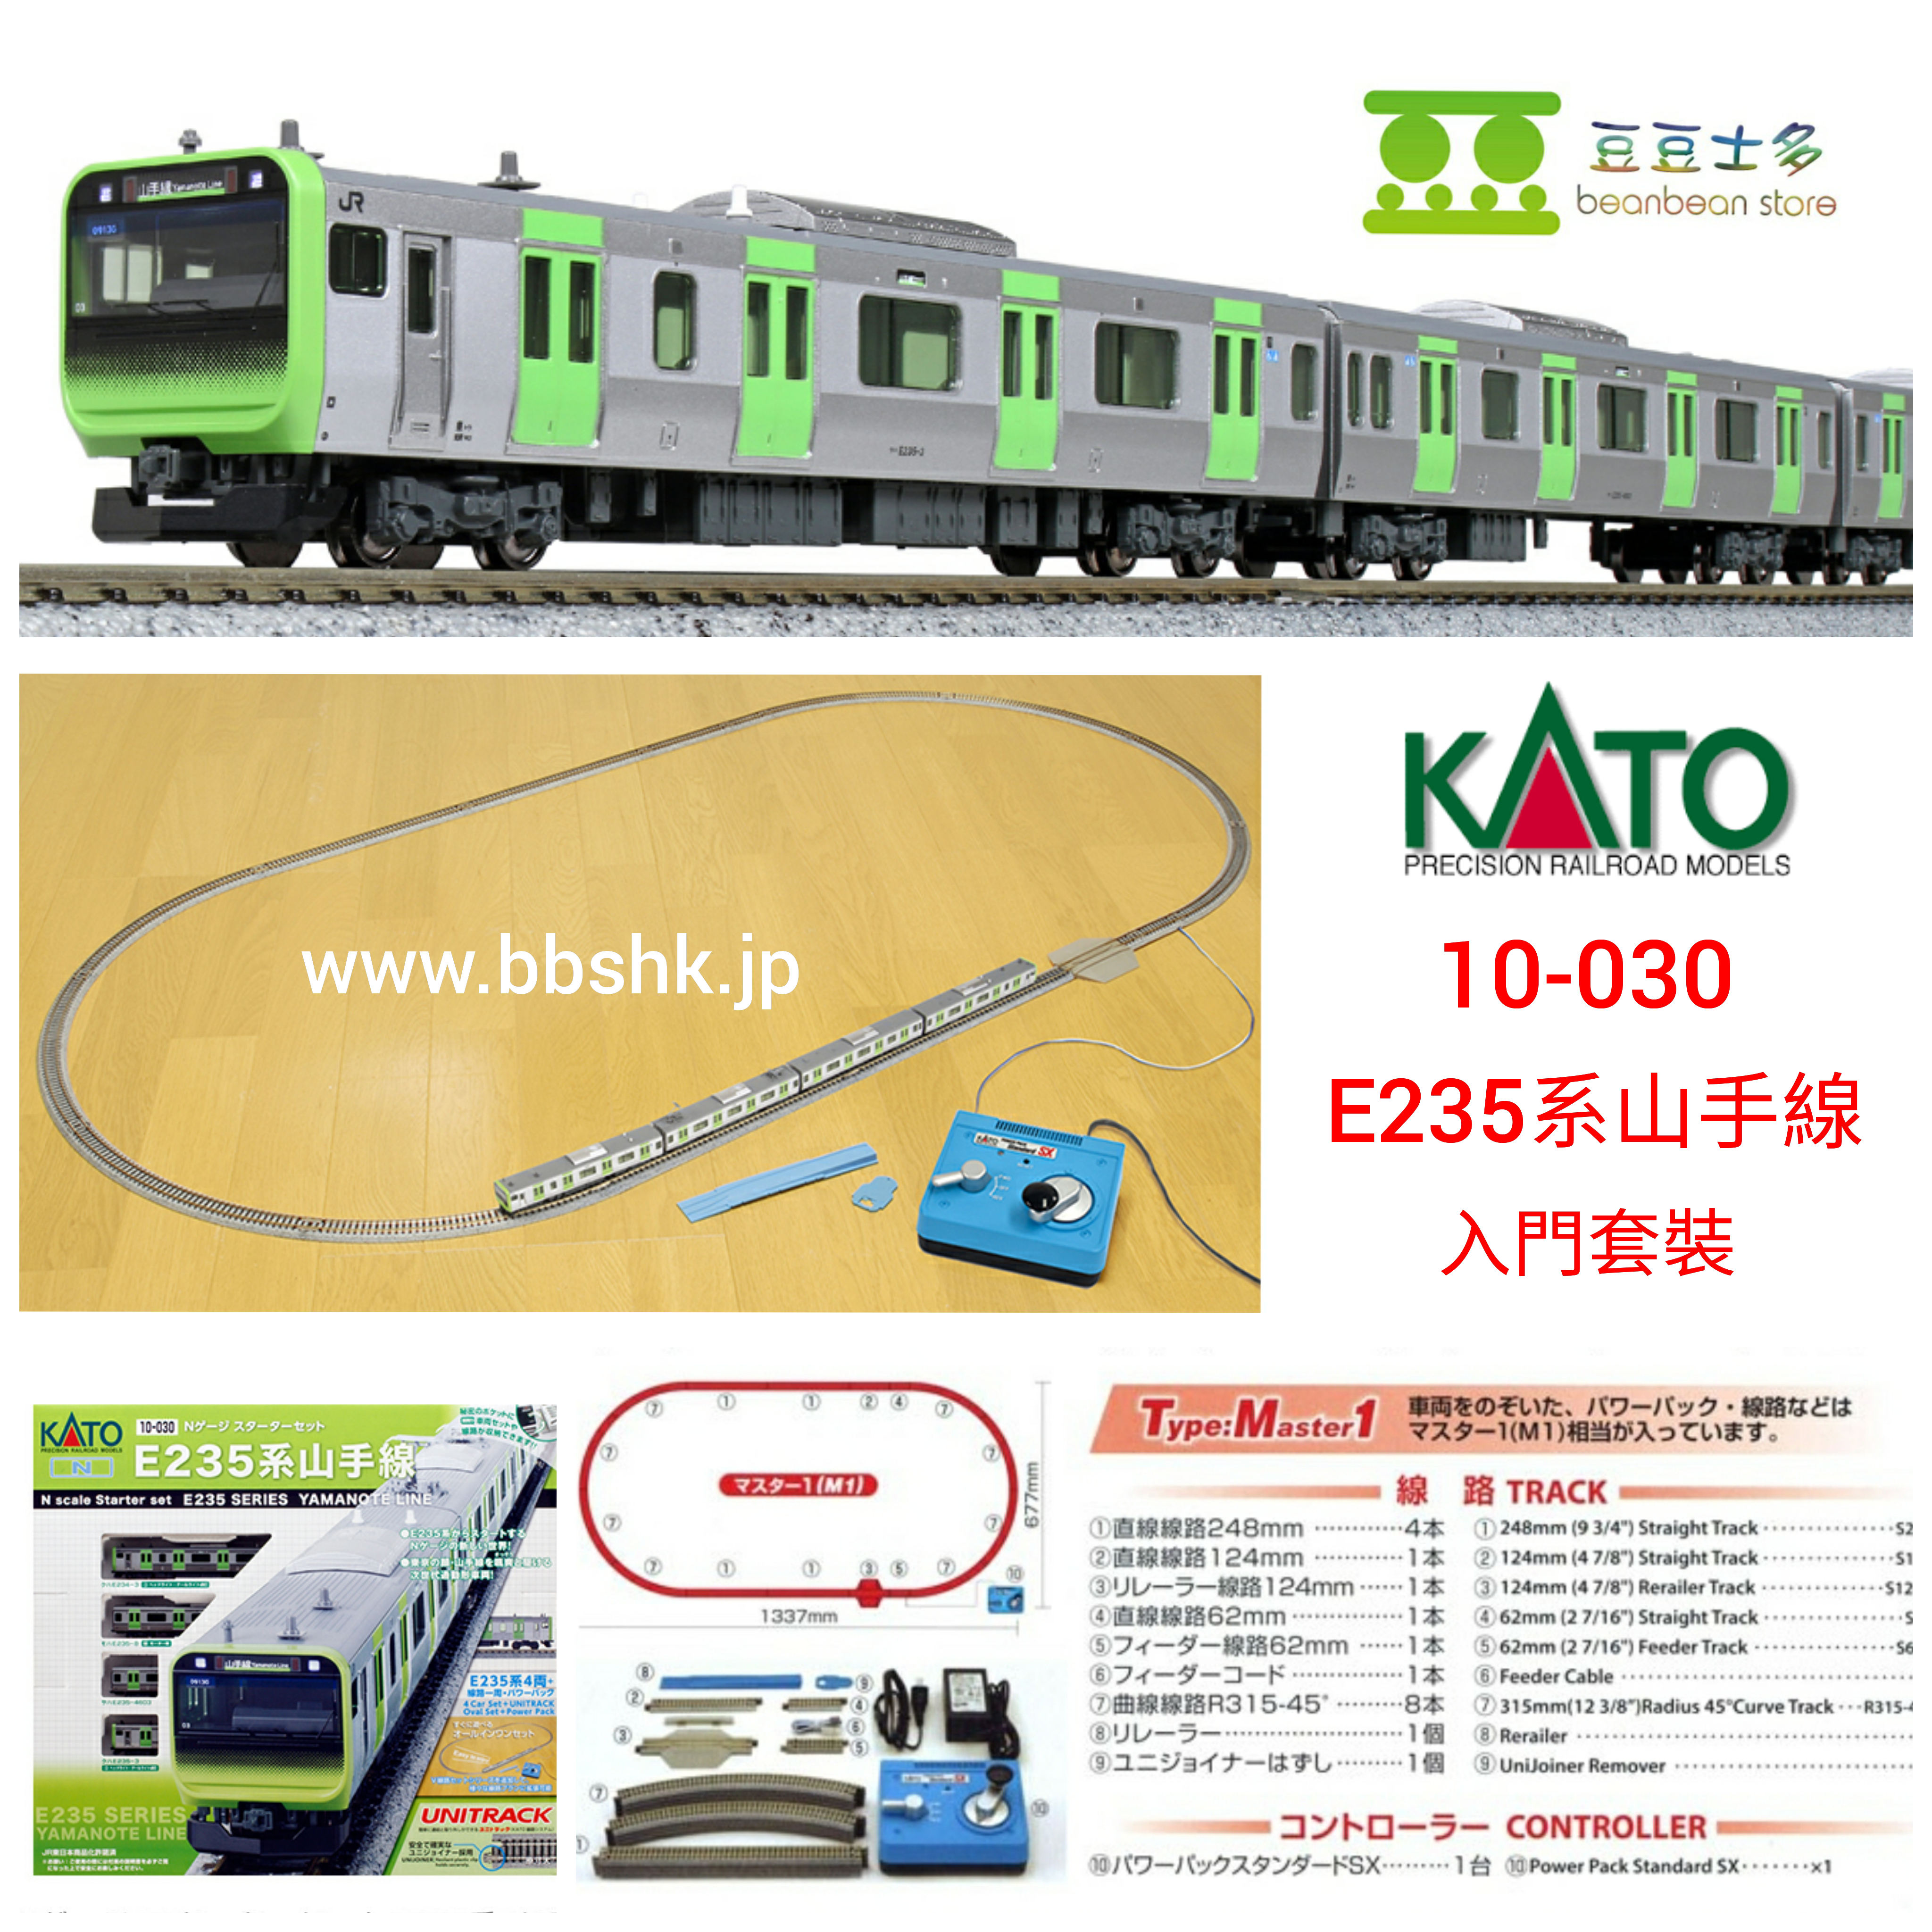 KATO 10-030 JR E235系 山手線 (4 両) 鐵道模型入門套裝